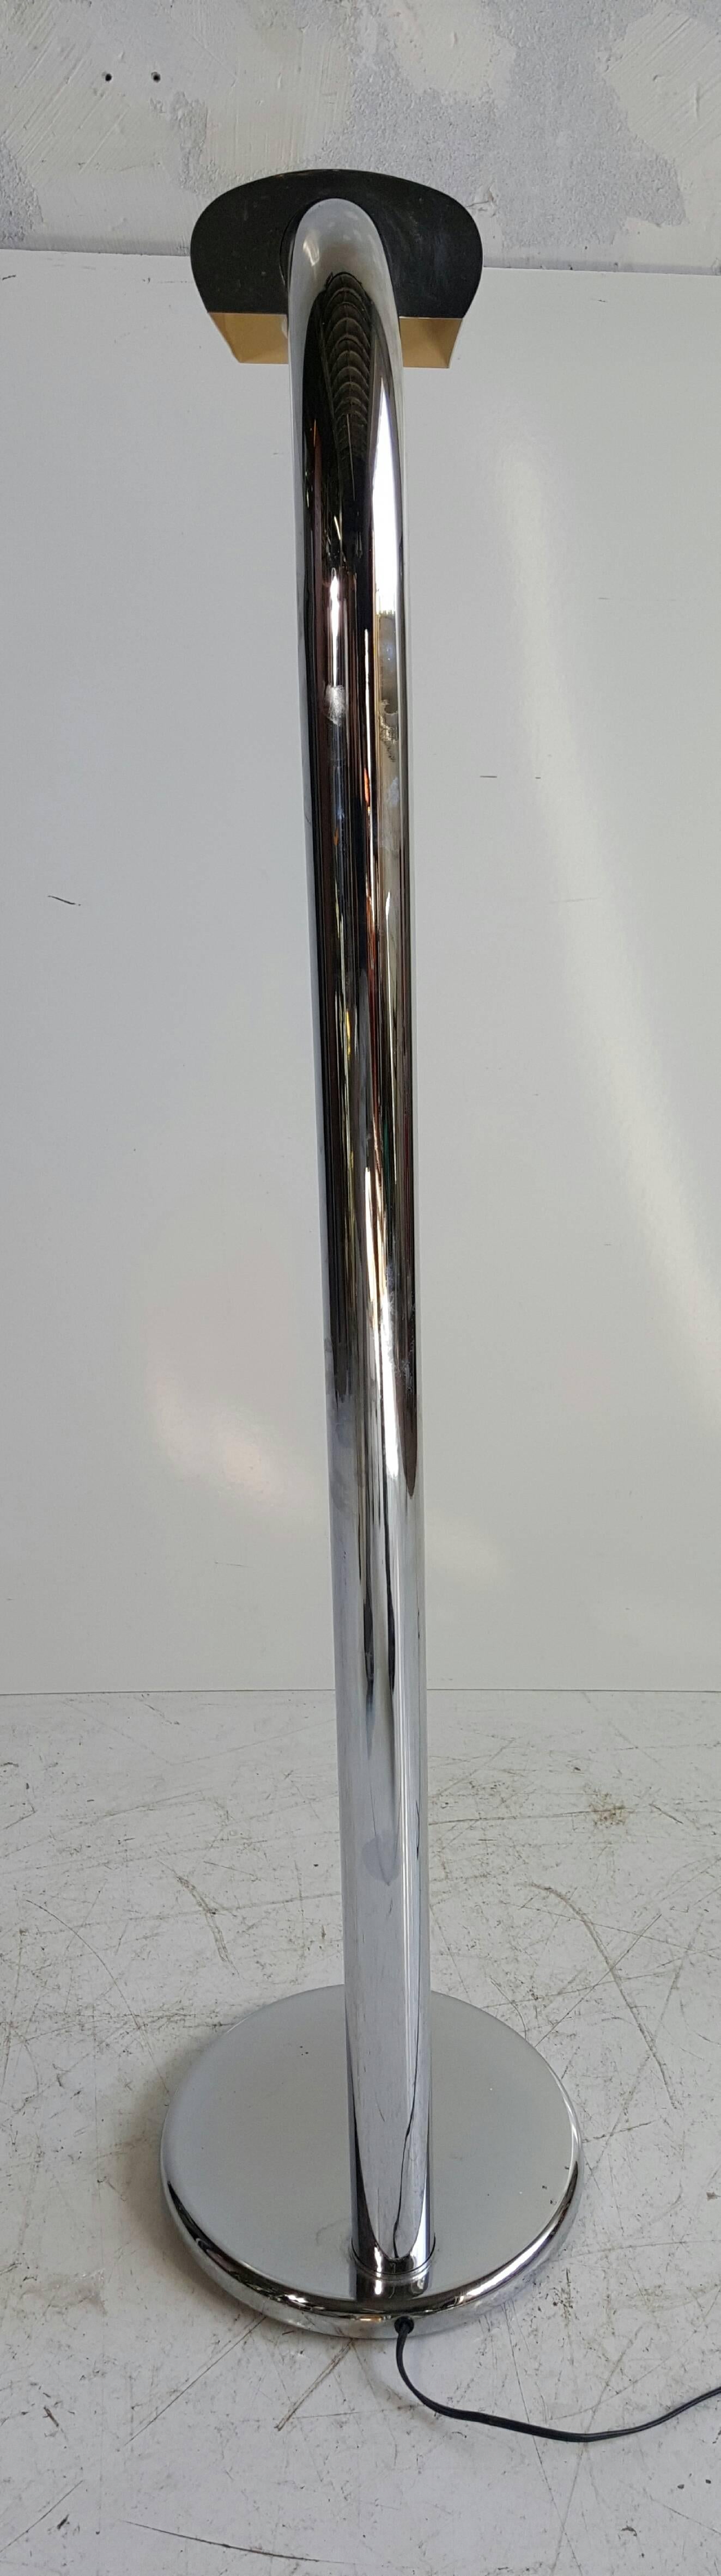 American Modernist Chromed Steel Floor Lamp by Jim Bindman for Rainbow Lamp Co For Sale